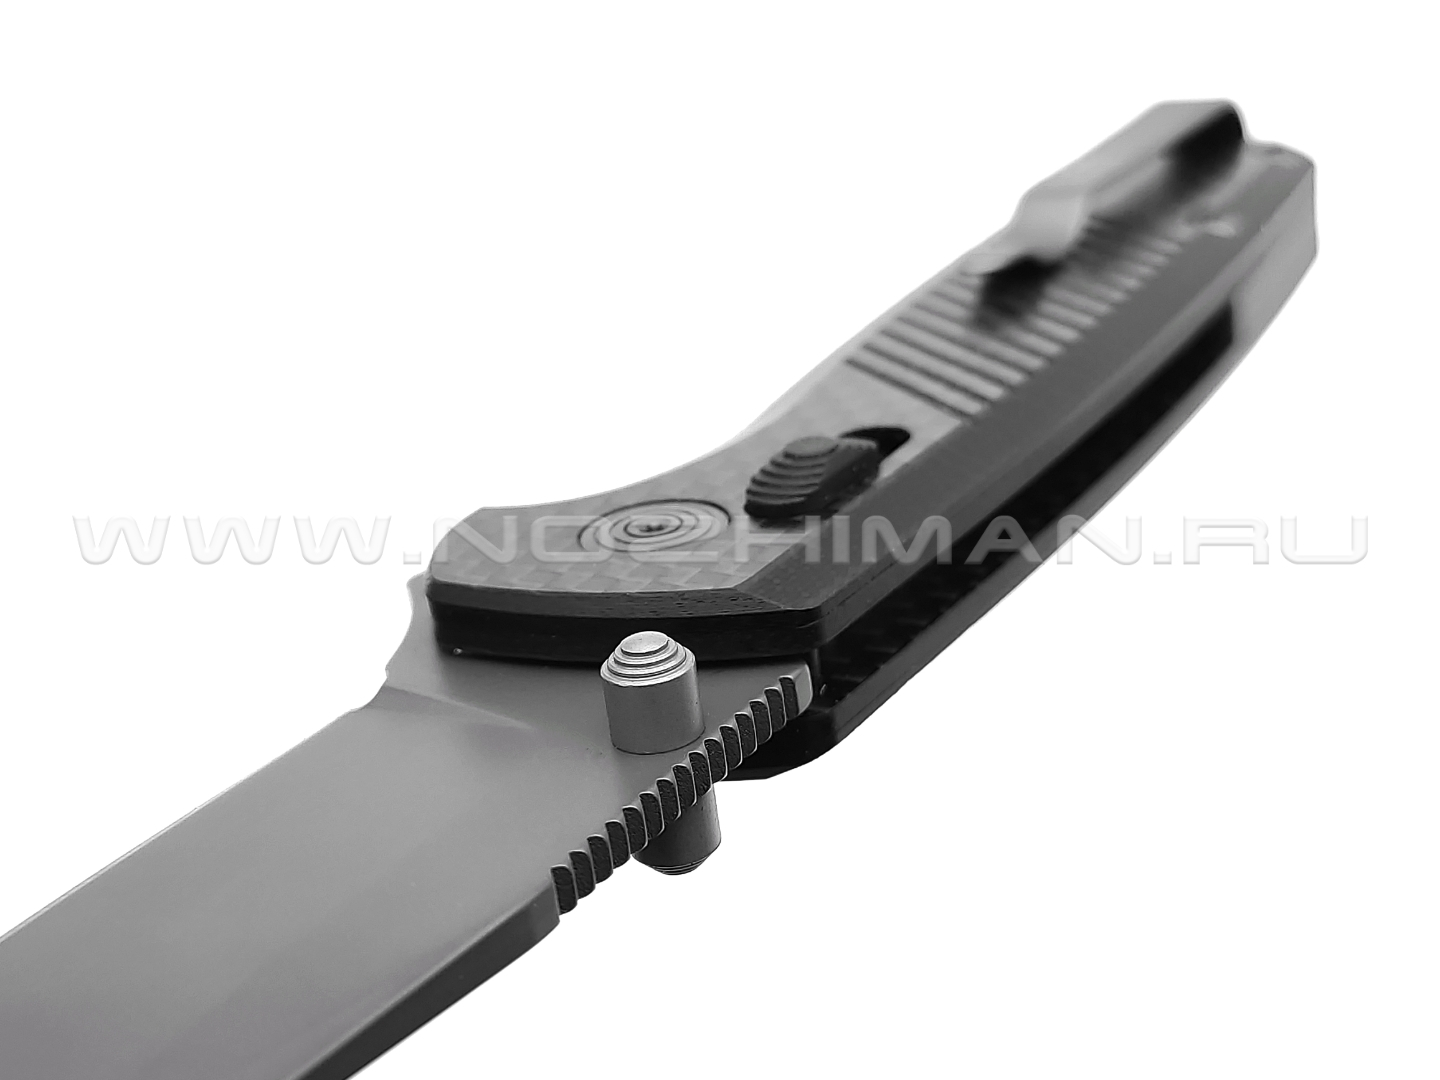 Нож SOG Terminus XR LTE TM1032-BX сталь Cryo CPM S35VN, рукоять Carbon fiber